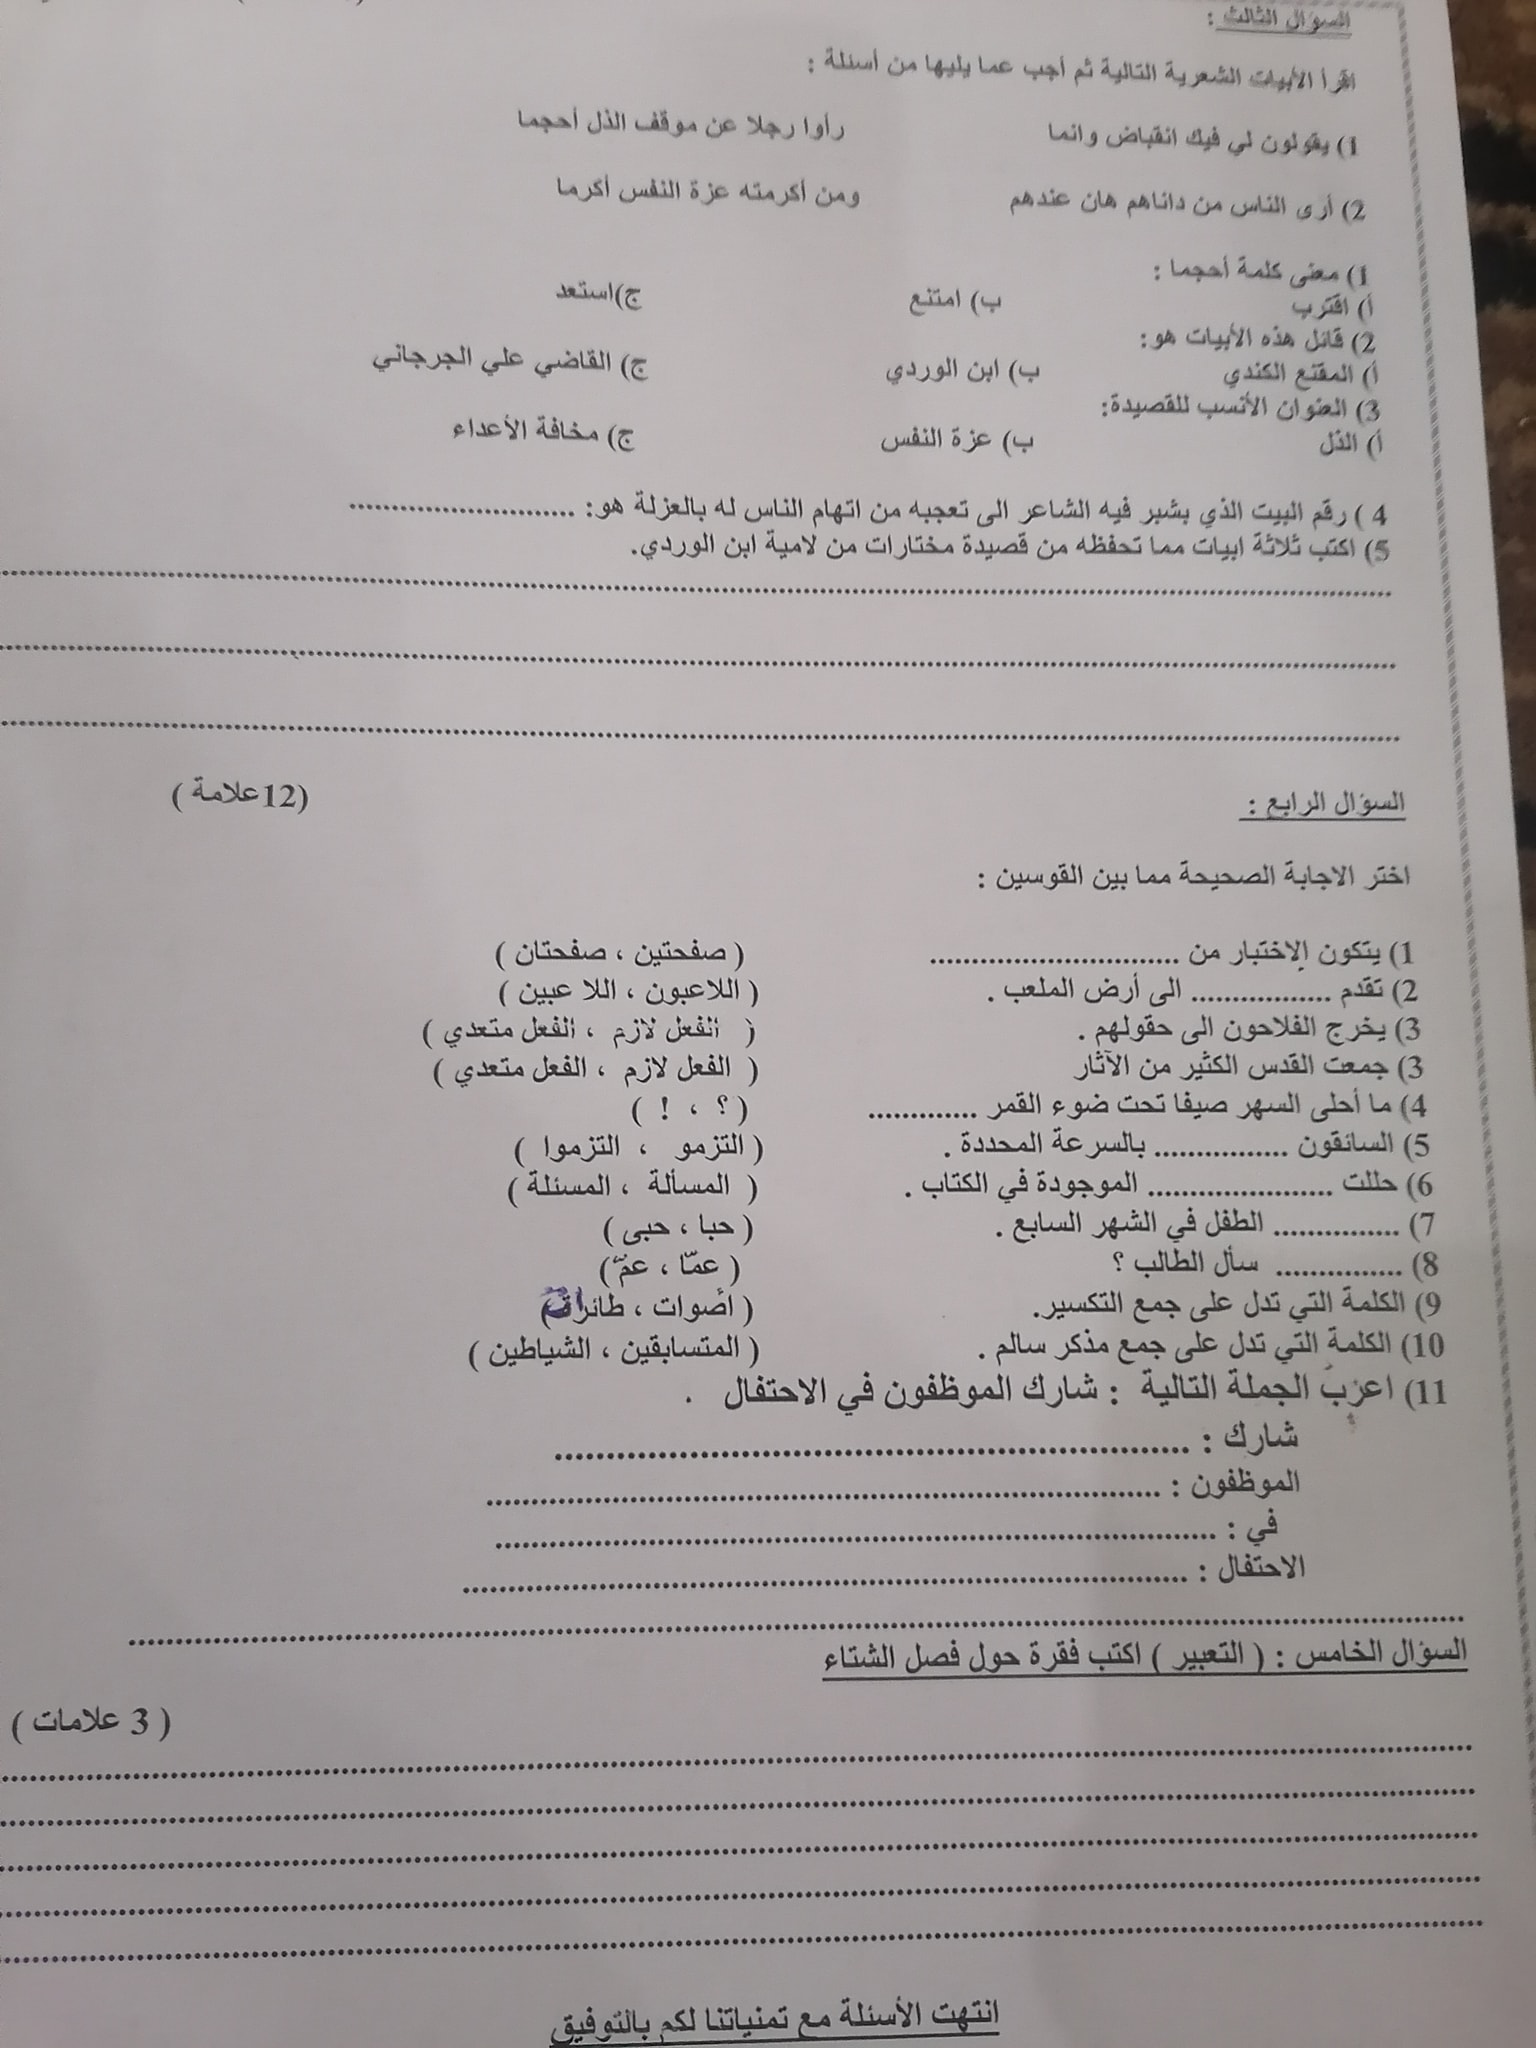 2 صور اختبار اللغة العربية النهائي للصف السادس الفصل الاول 2021.jpg